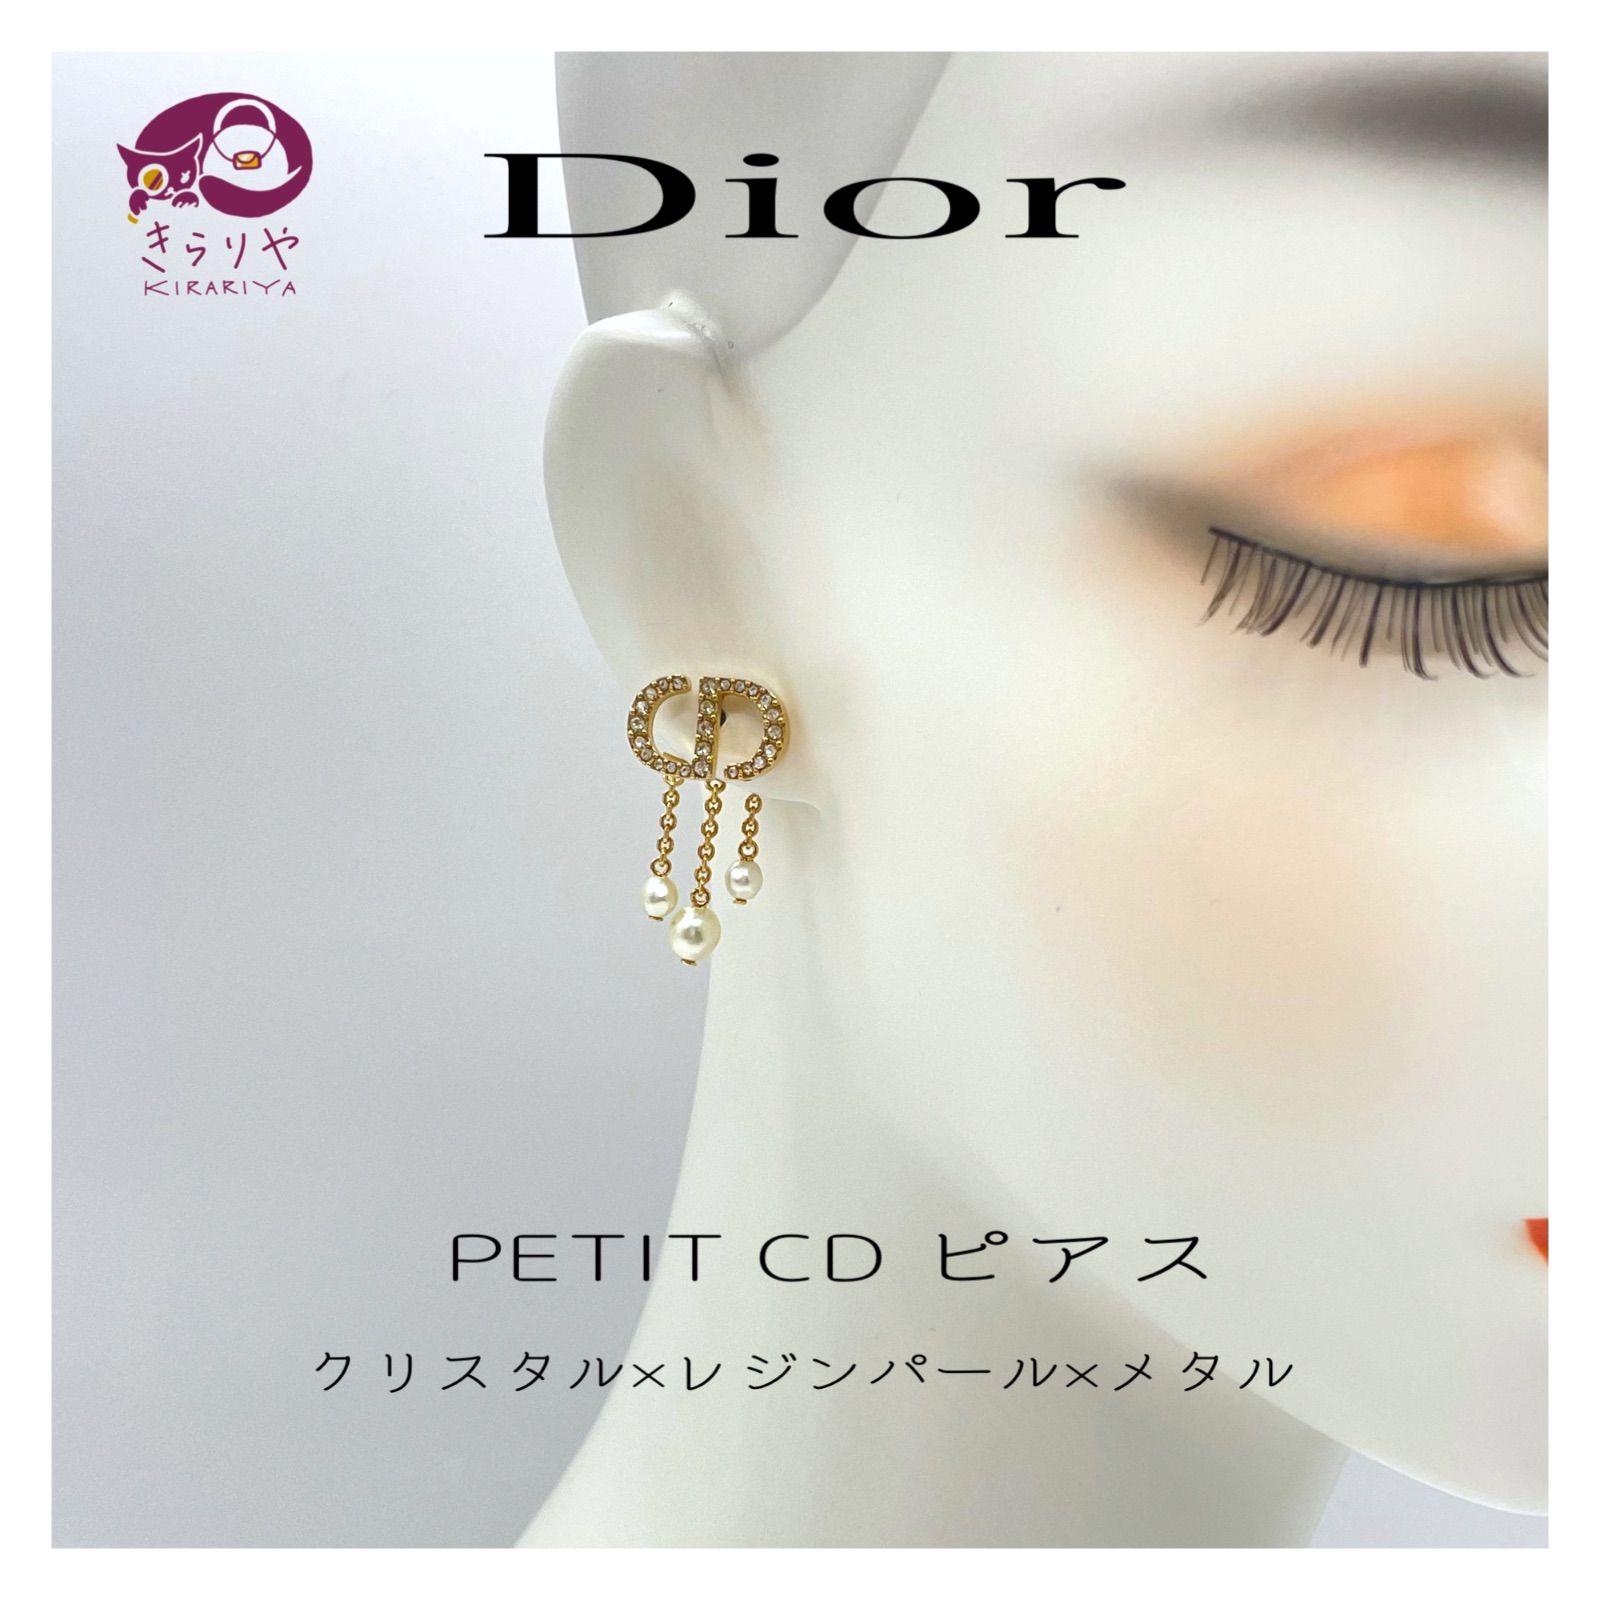 Dior ディオール PETIT CD ピアス ホワイトクリスタルCDシグネチャー